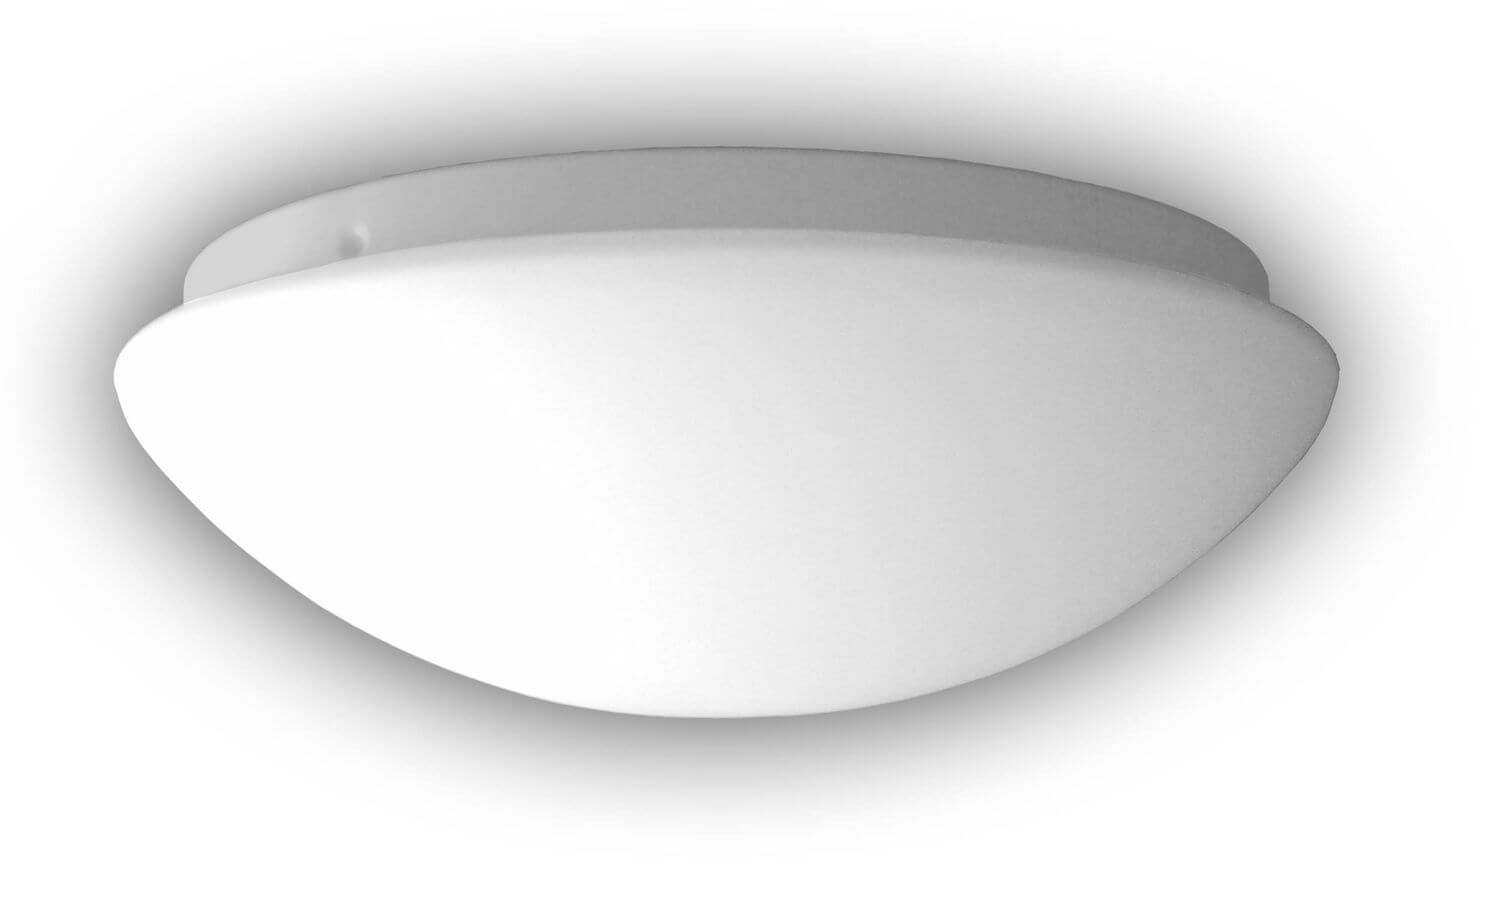 HF Nurglasleuchte Opal matt, 35cm, Niermann Sensor, E27 2x 56235